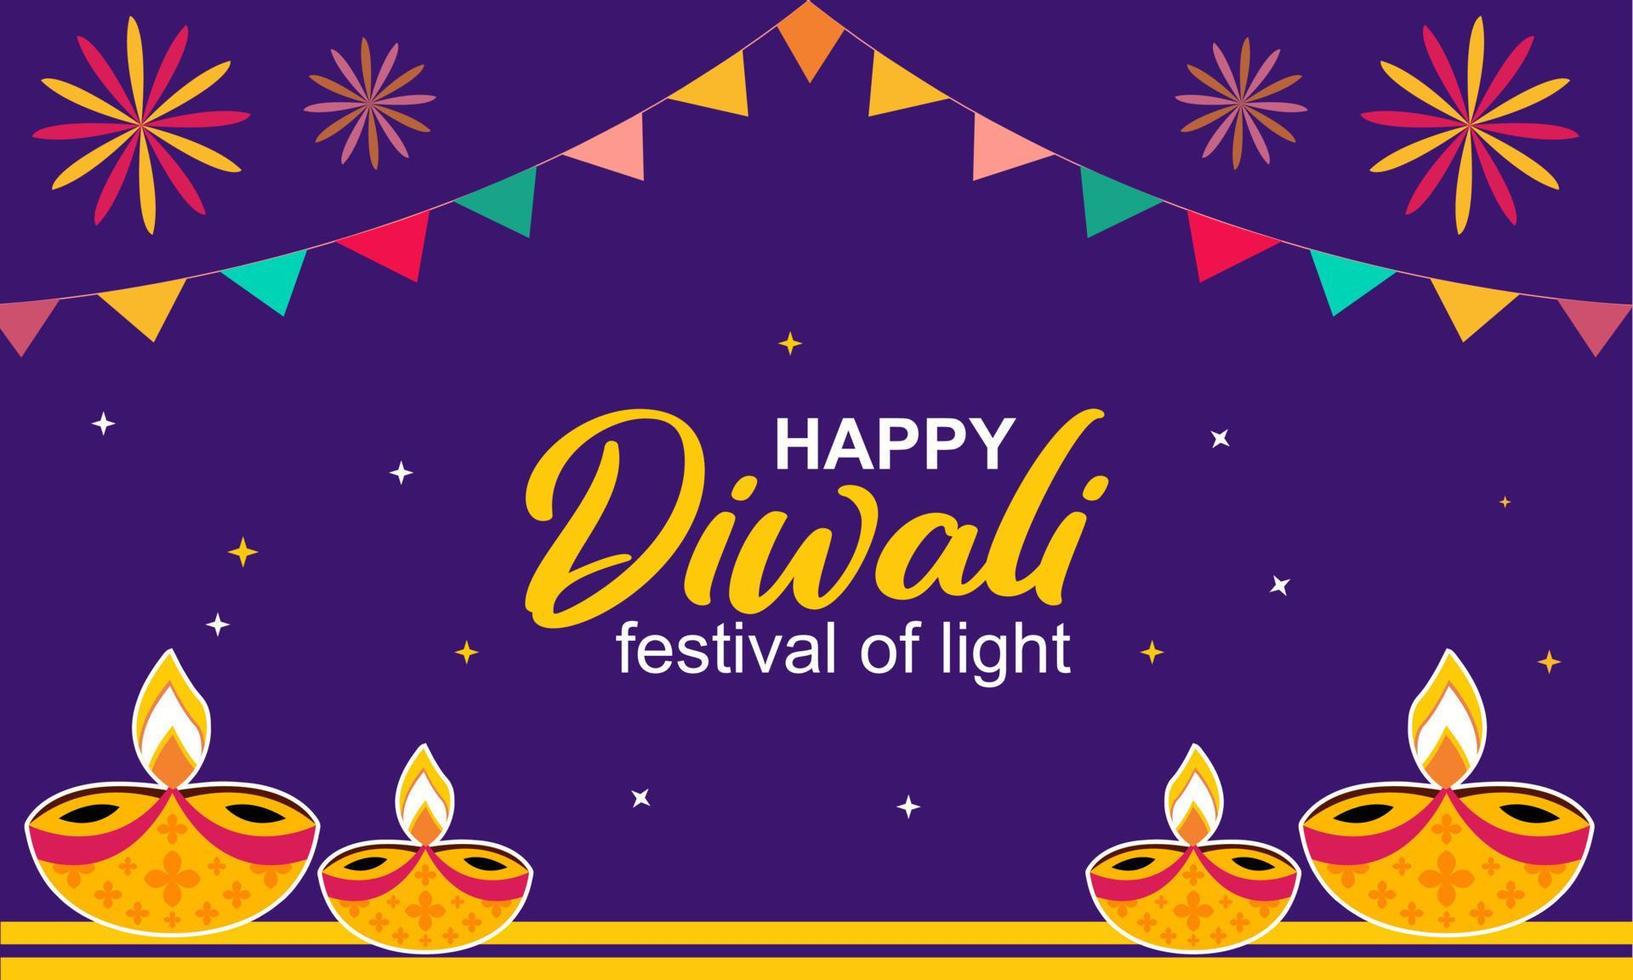 Semester hälsning kort dekorativ bakgrund, baner, på lila bakgrund, diwali festival med skön eleganta lampor och diwali belysning vektor